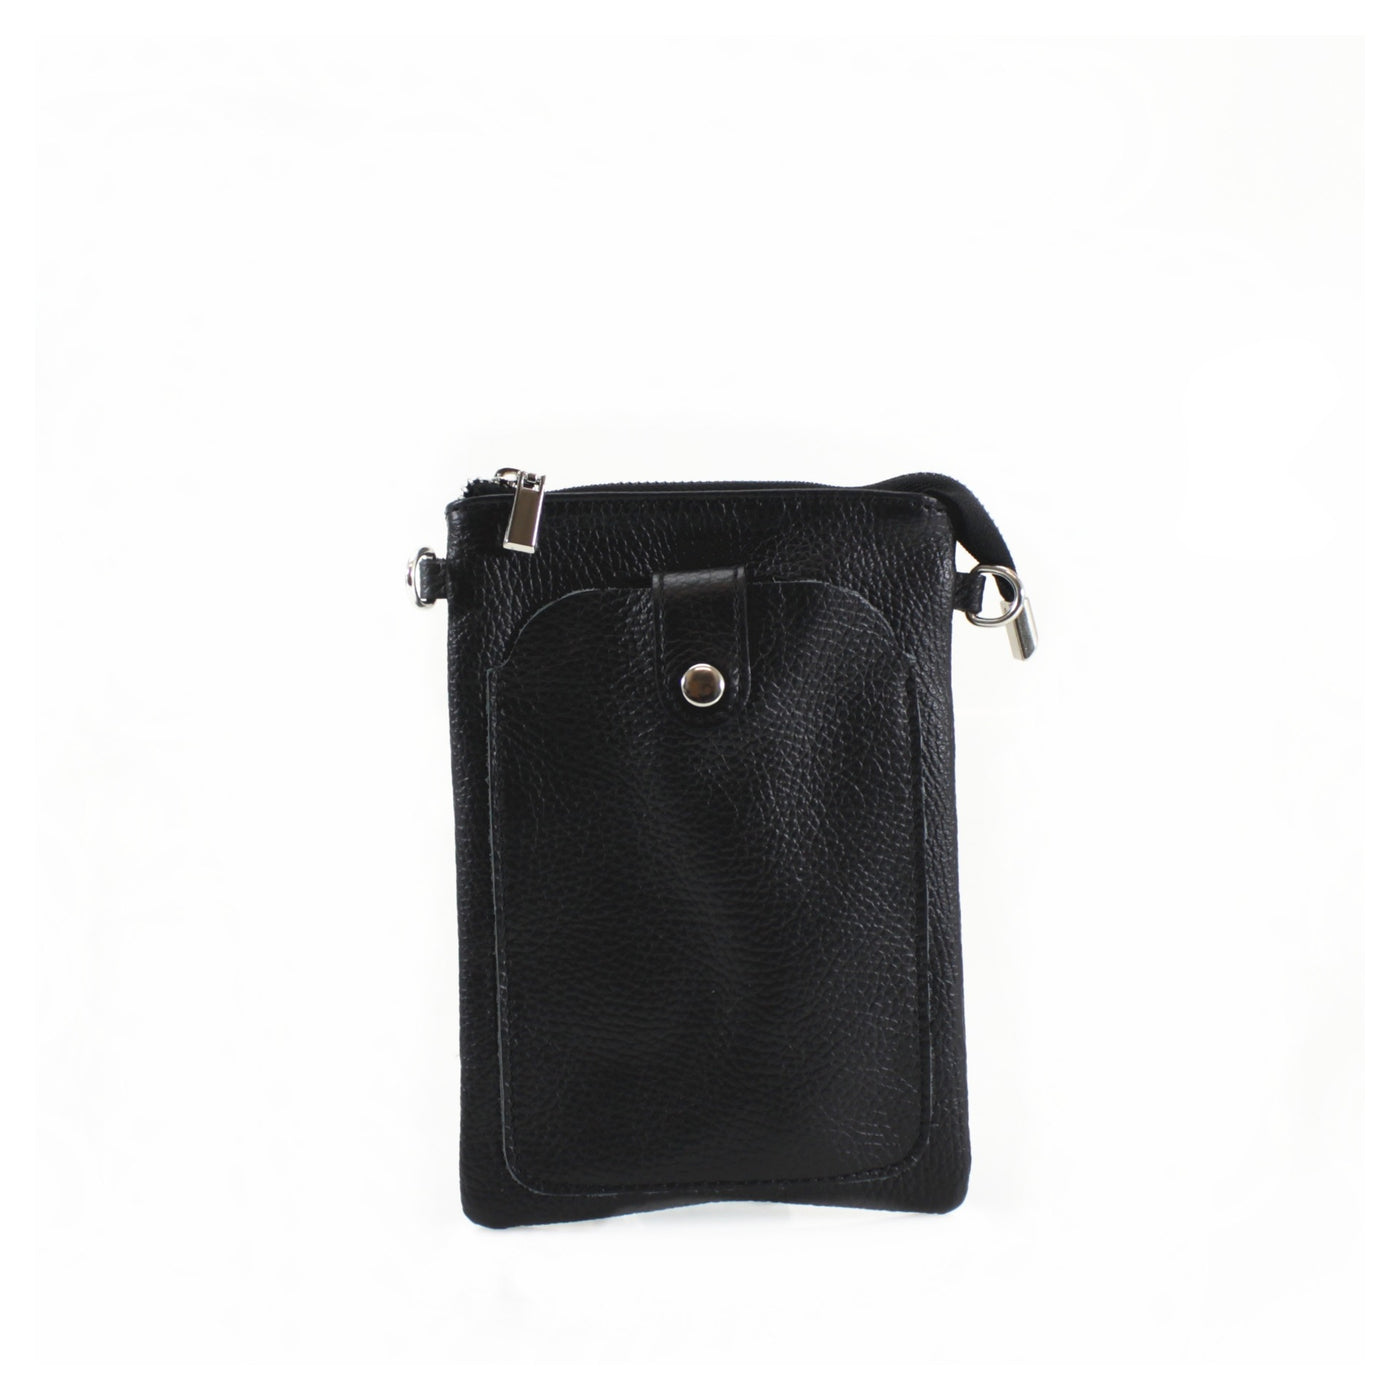 Leather Press-stud Phone Handbag - Black